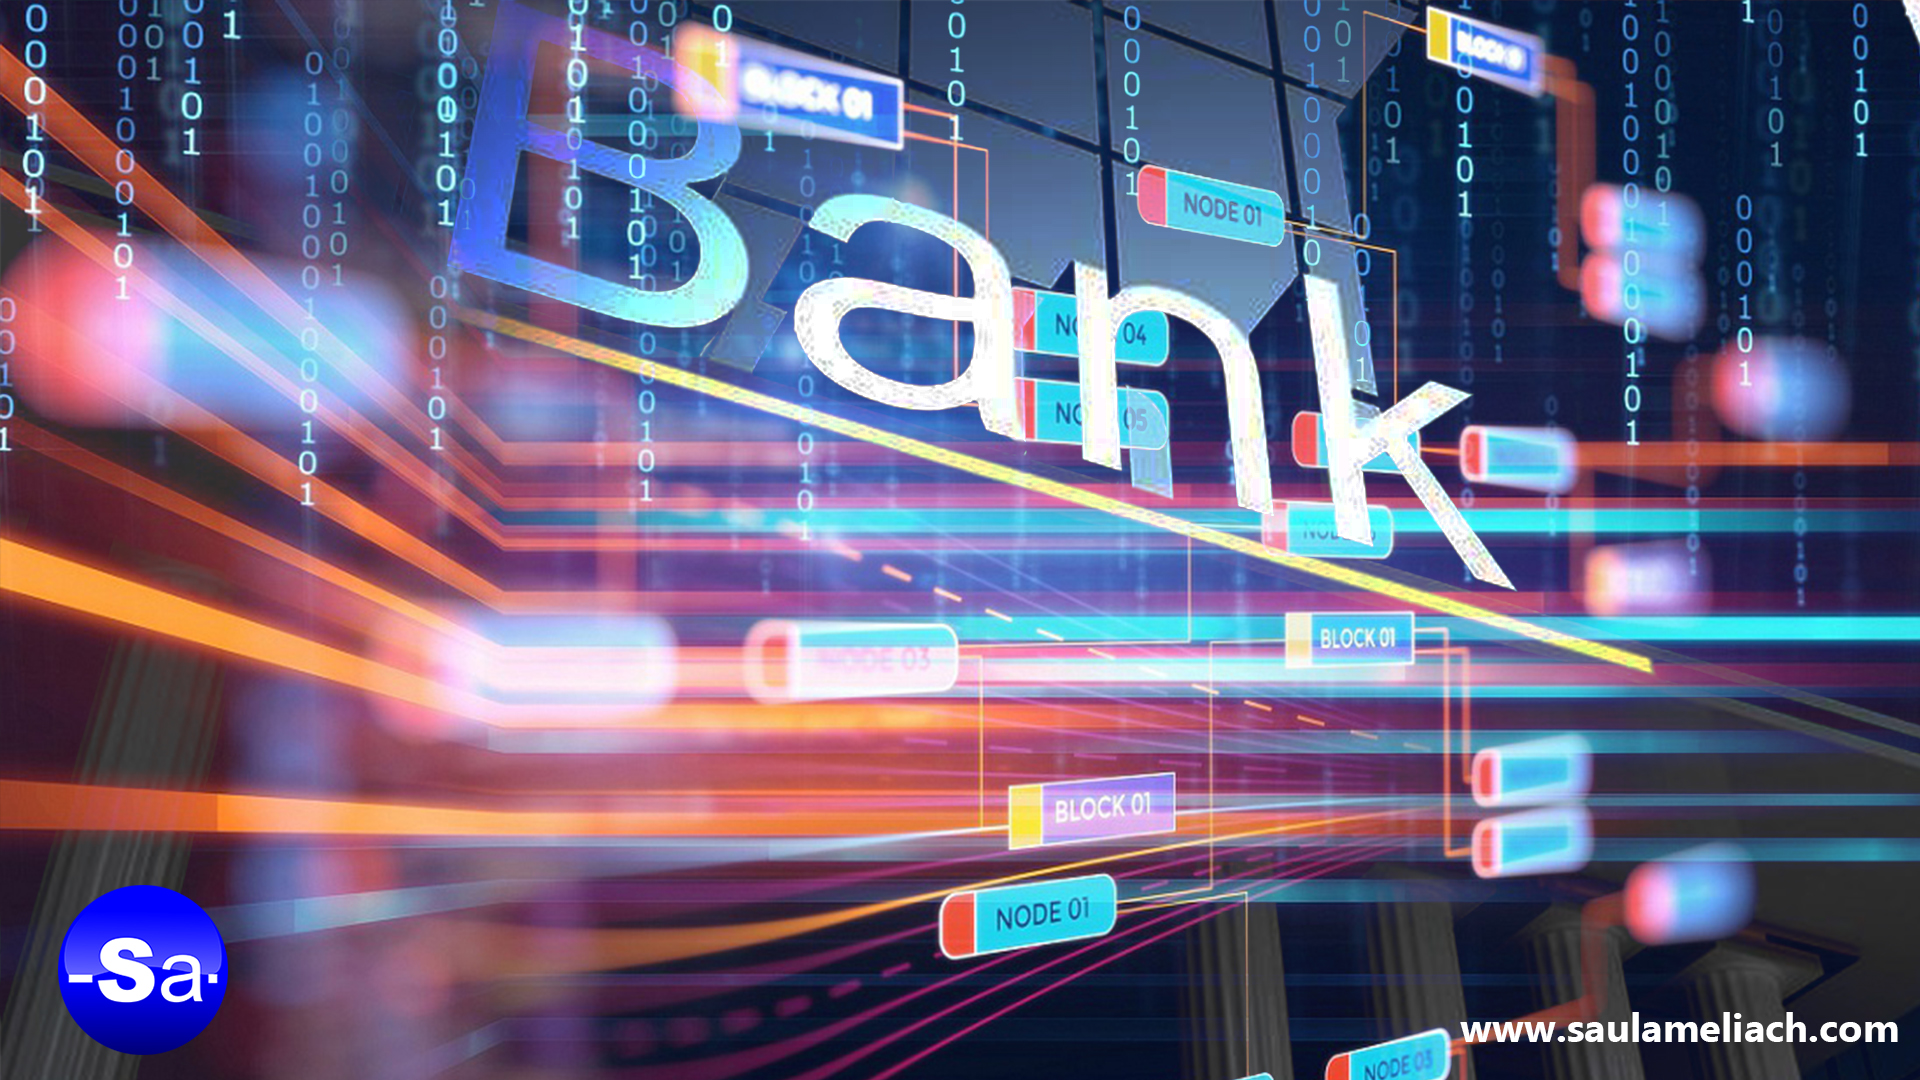 Bancos comenzaron operaciones con plataforma Blockchain impulsada por IMB